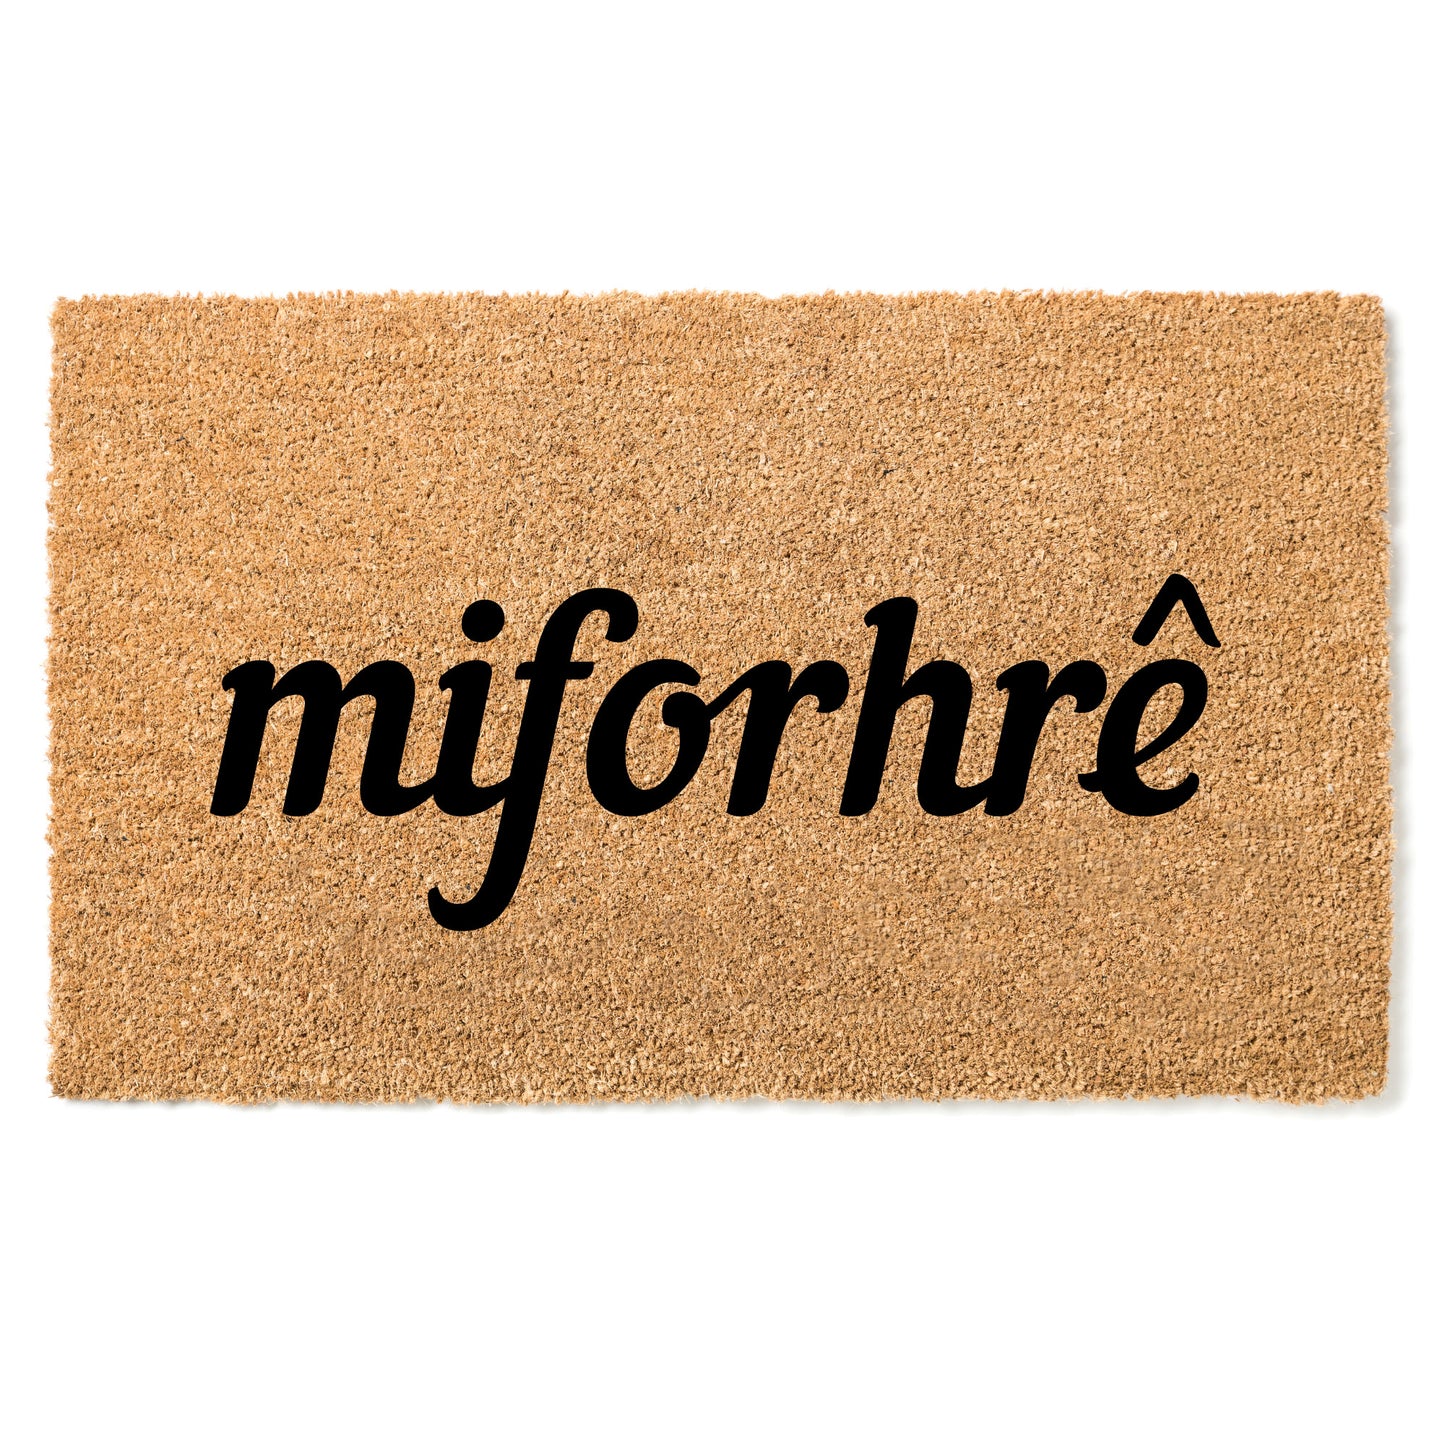 "Miforhrê" door mat - Greeting in Lobiri